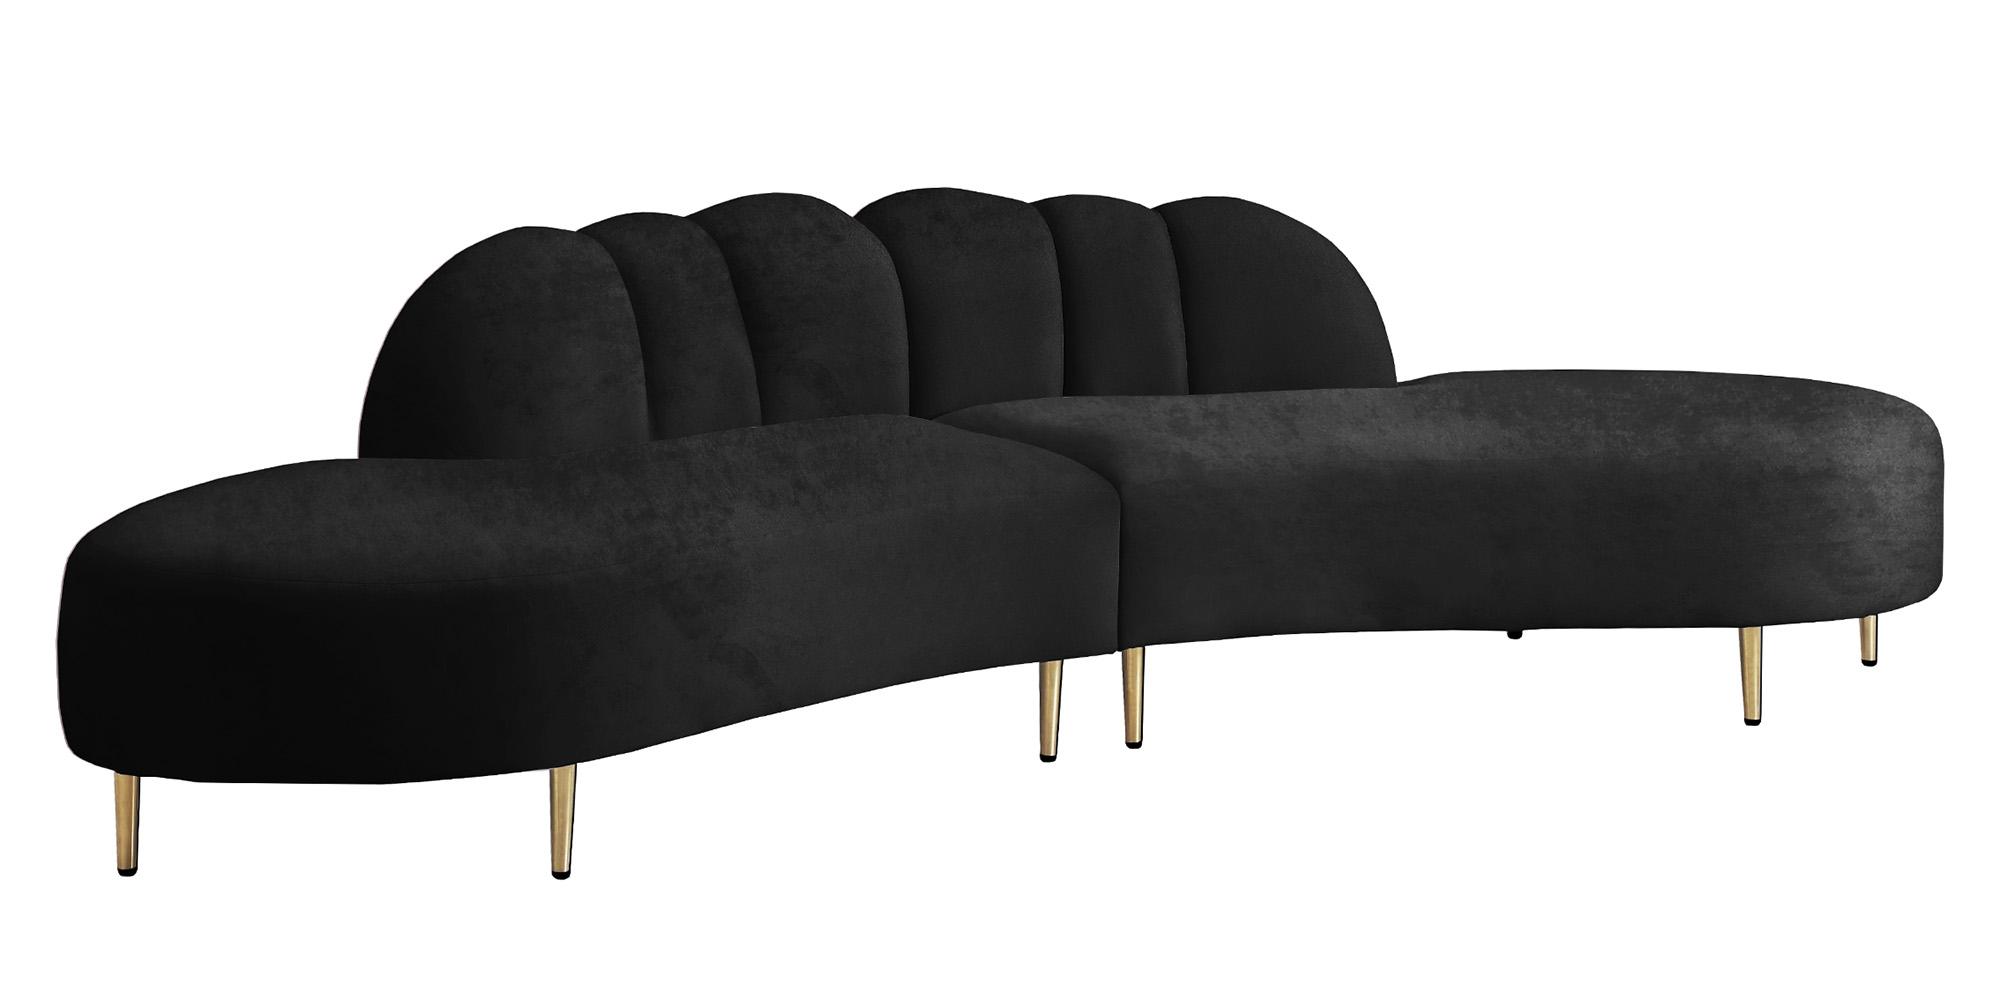 Contemporary, Modern Sectional Sofa DIVINE 618Black 618Black-Sectional in Black Velvet